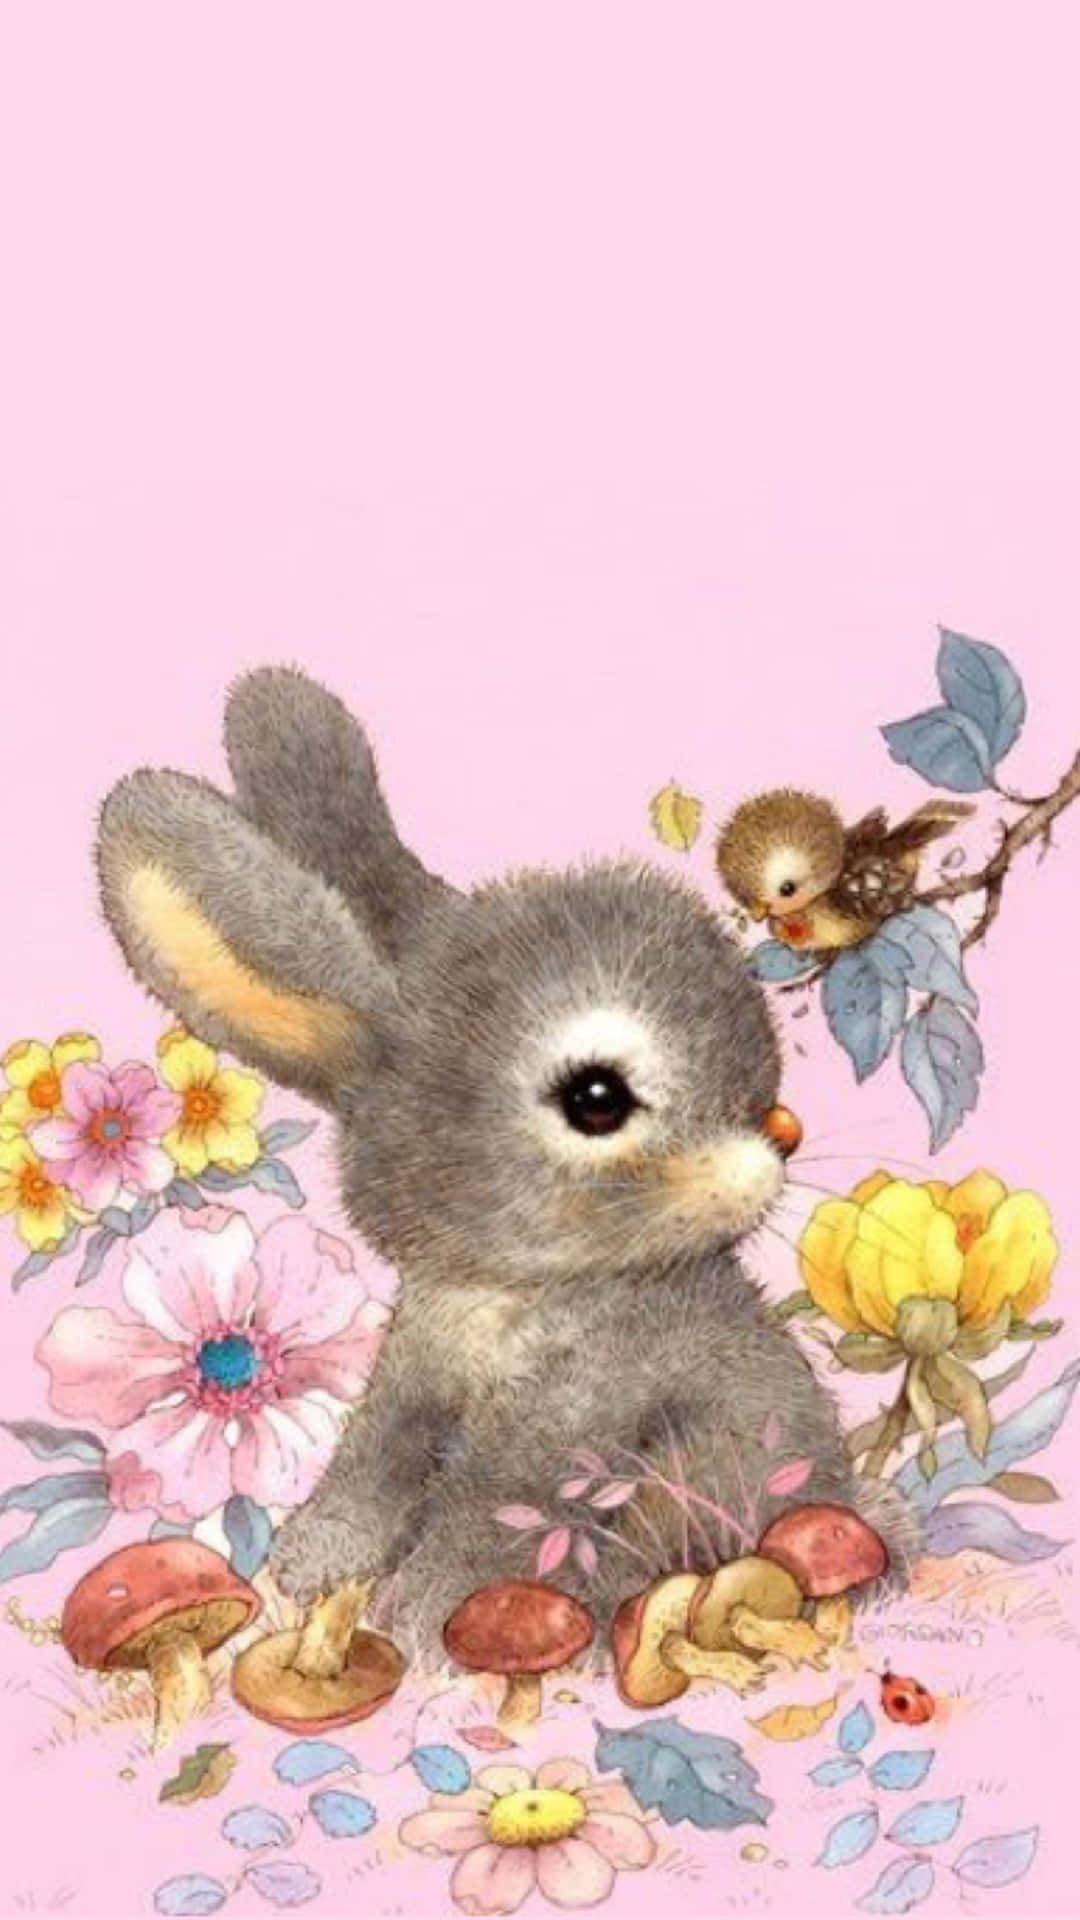 Cute Bunnyand Bird Illustration Wallpaper